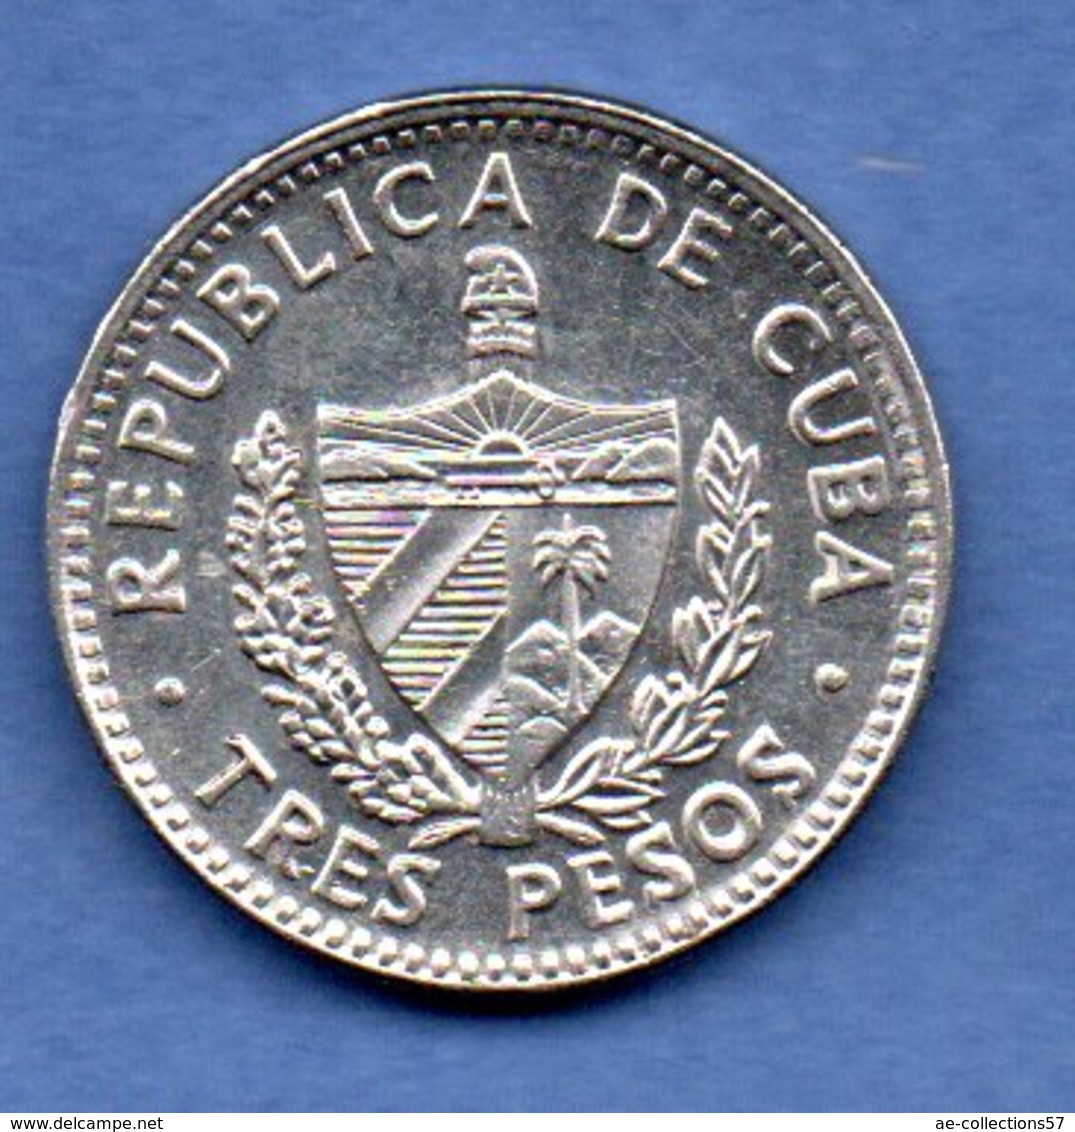 Cuba  - 3 Pesos 1995   - Km # 346a - état  SUP - Cuba